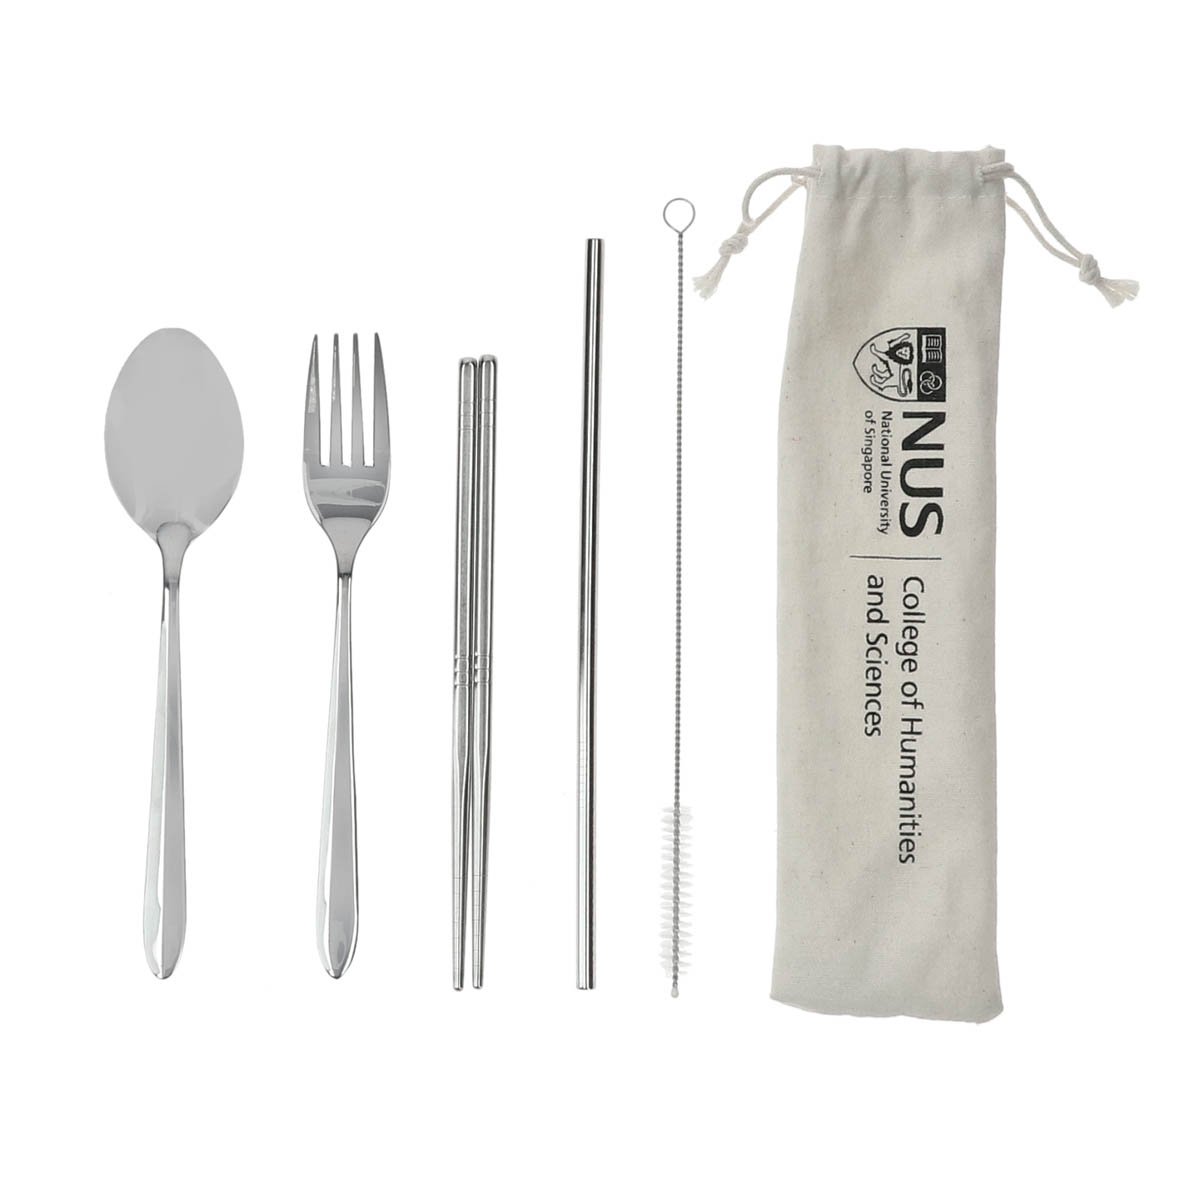 NUS College 5 in 1 Cutlery Set consist stainless steel spoon